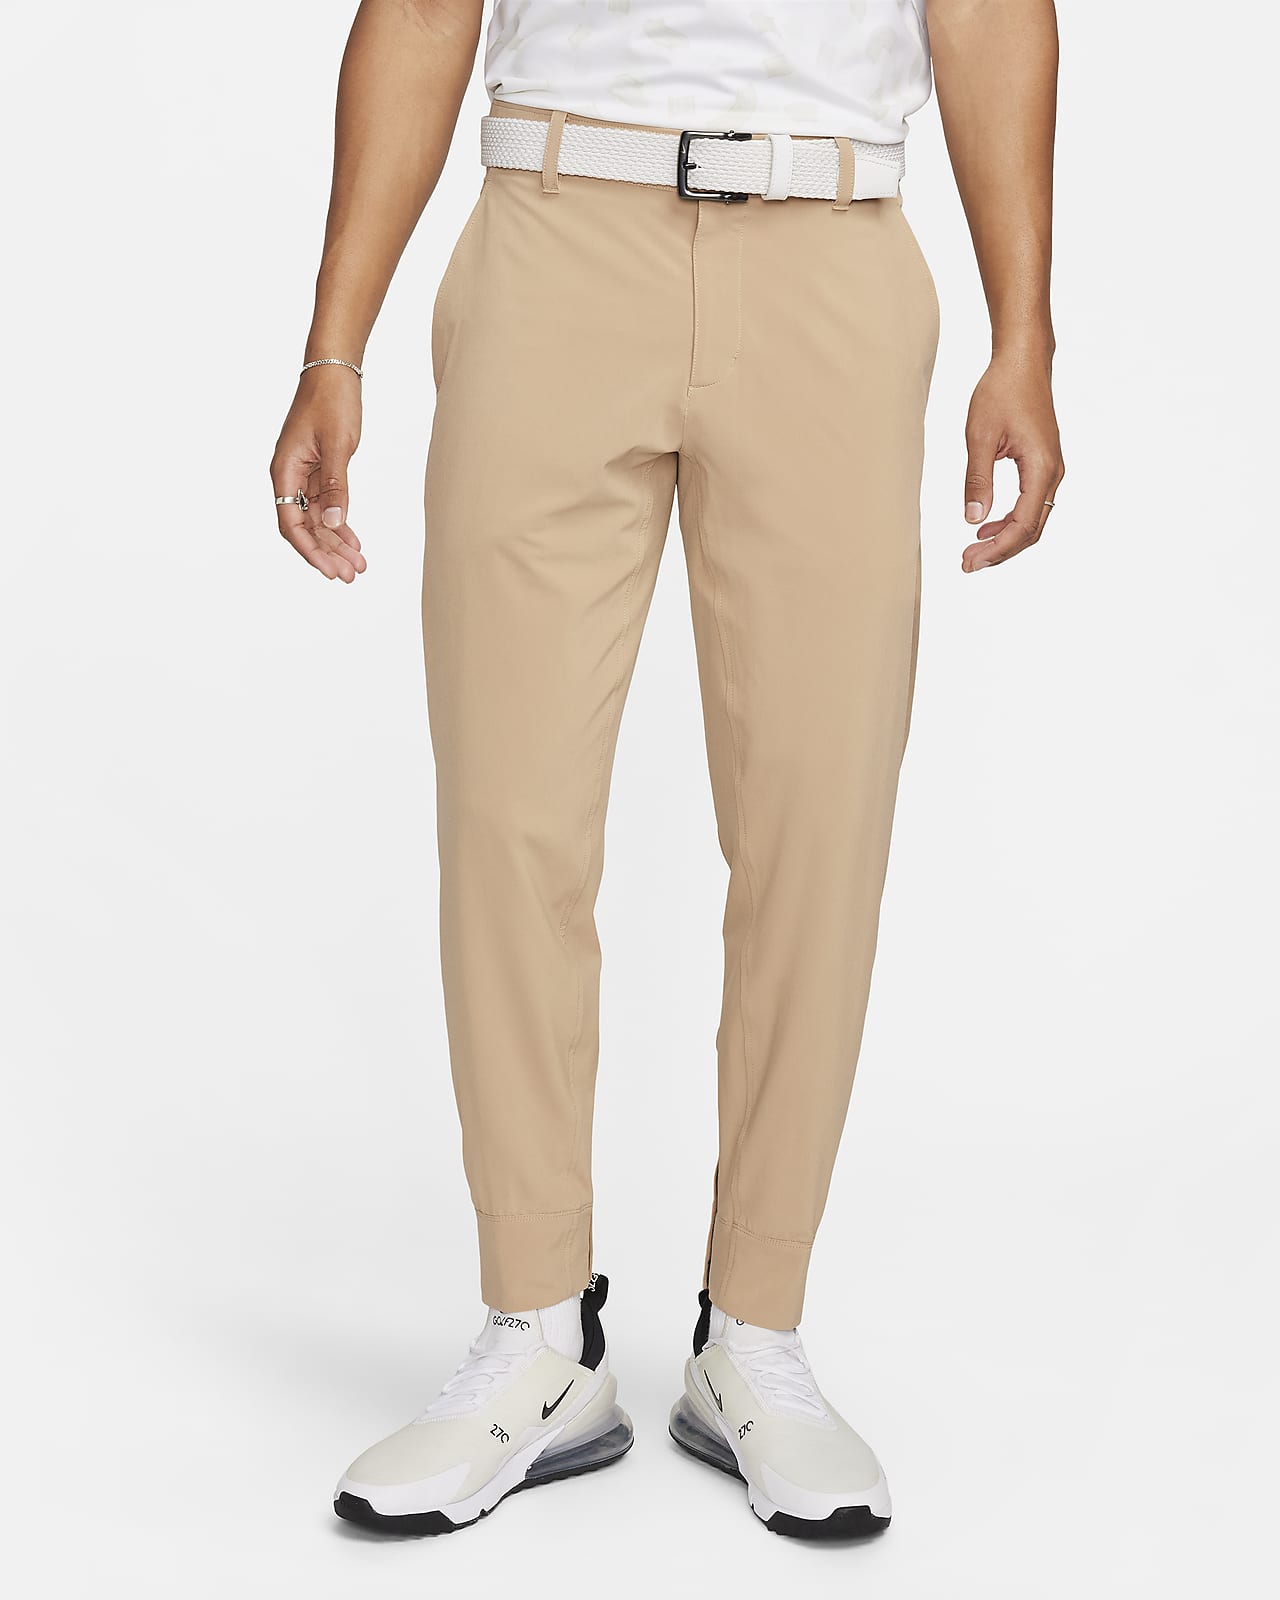 Pants tipo joggers de golf para hombre Nike Tour Repel